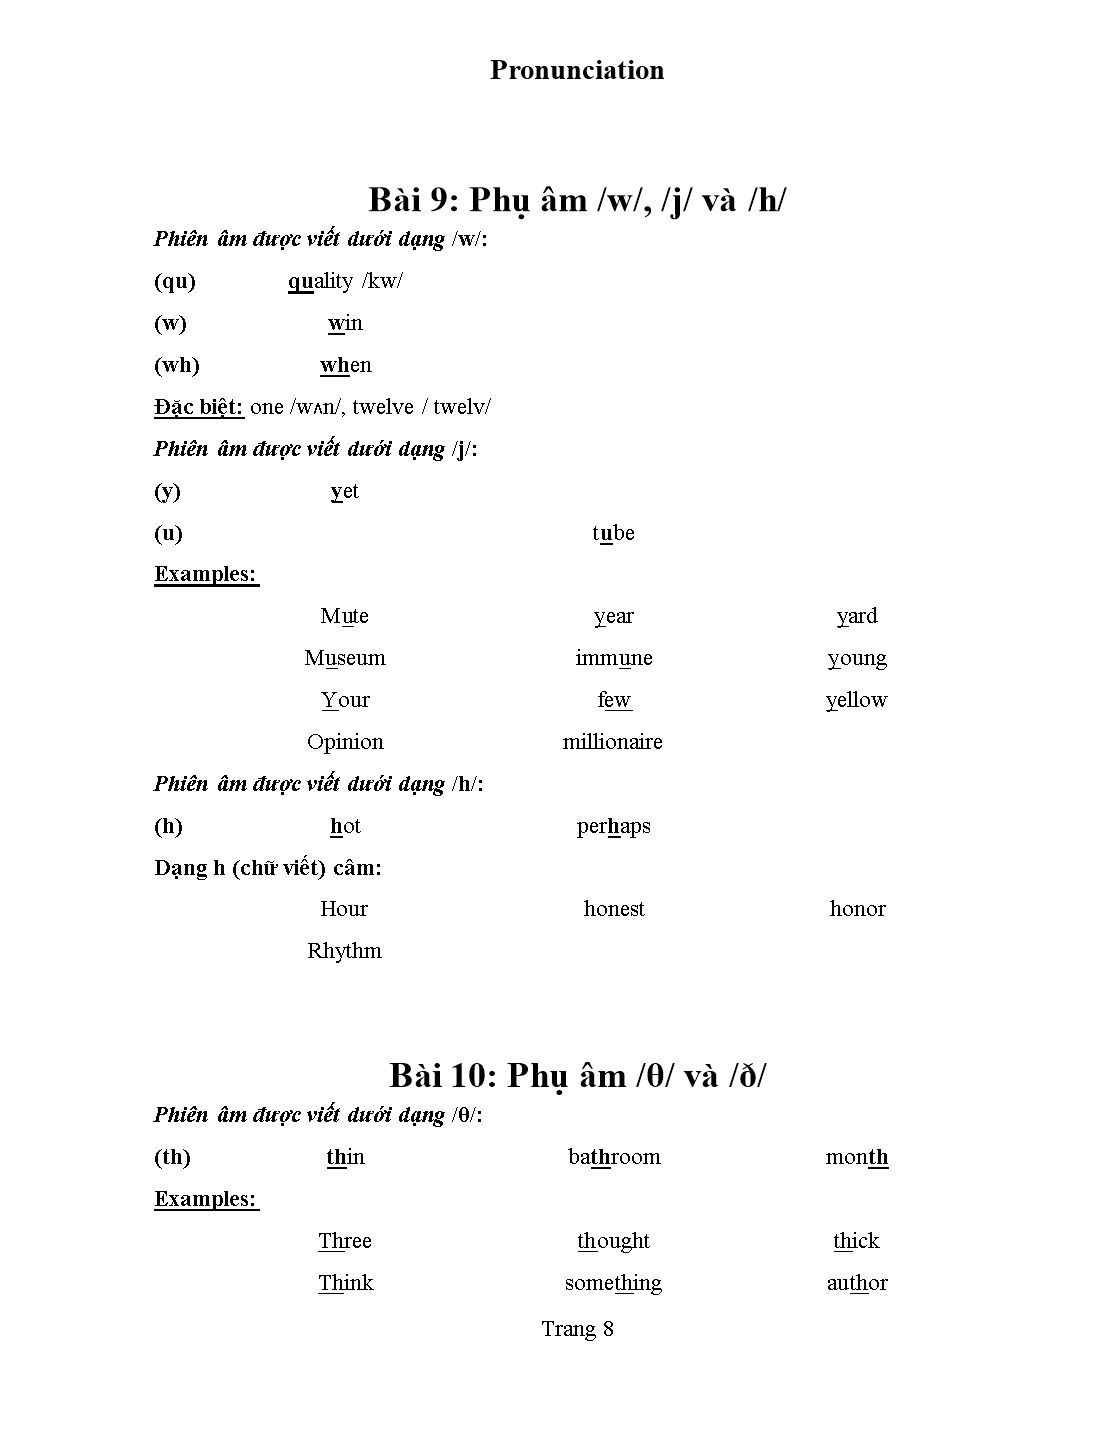 Tài liệu Pronunciation - Kim Thanh trang 9